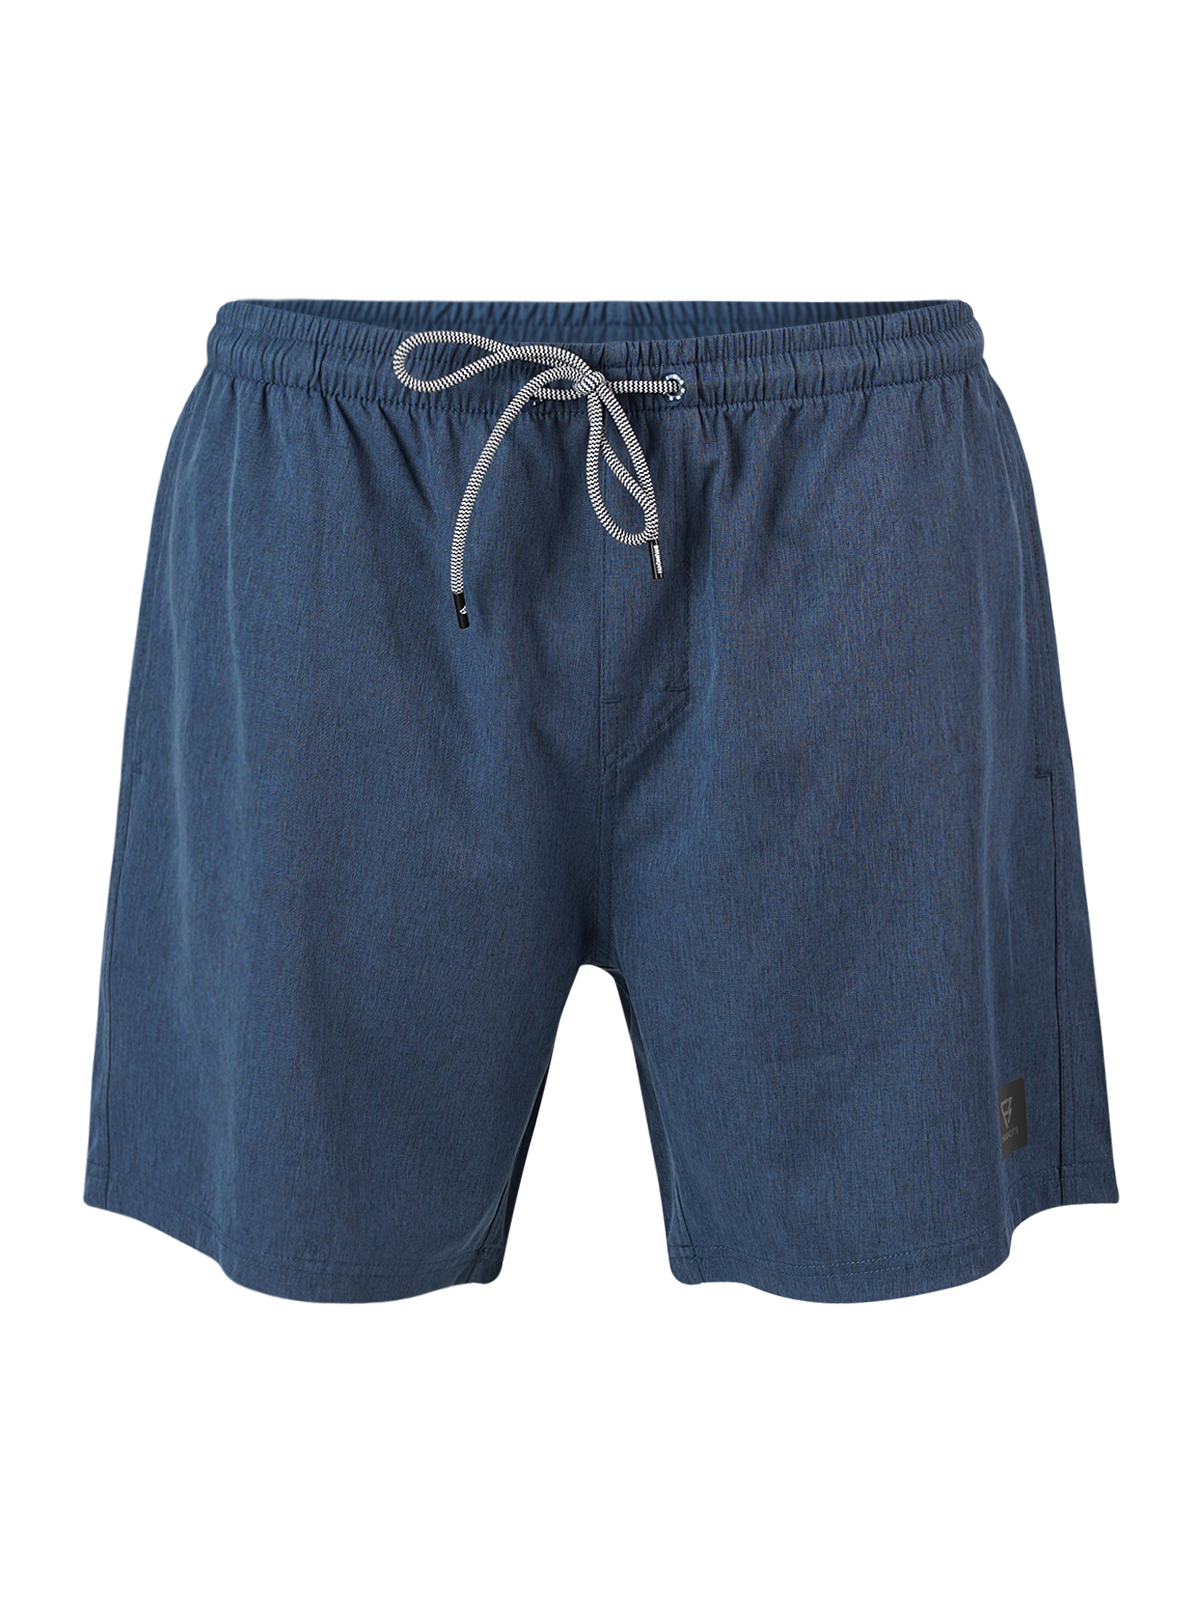 Brunotti Wijde Zwemshort - Night blue - maat XL (XL) - Heren Volwassenen - Polyester- 2411310065-7996-XL